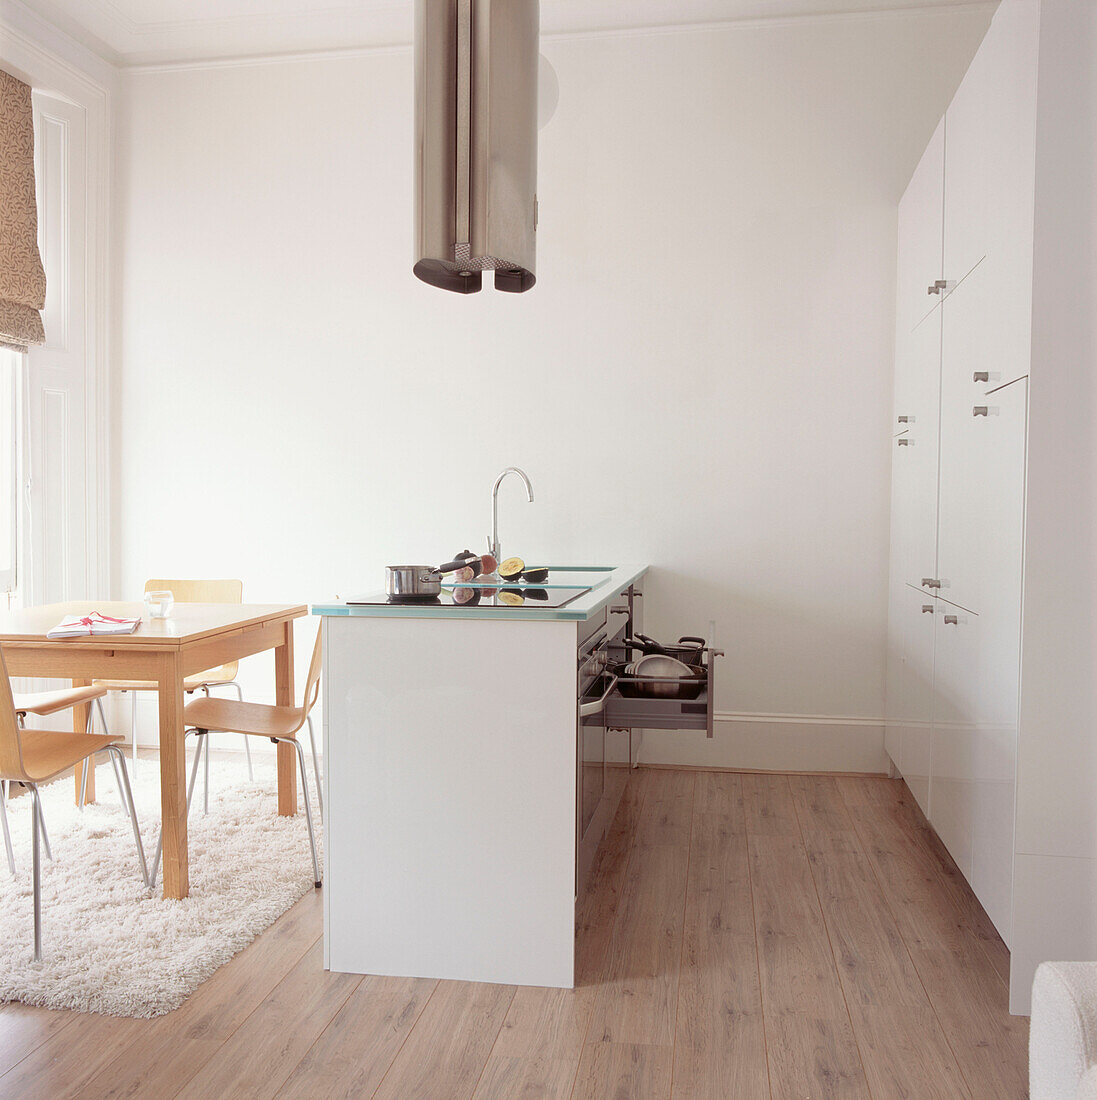 Essbereich in der Küche eines Studioapartments mit einer Wand aus weißen Einbauschränken